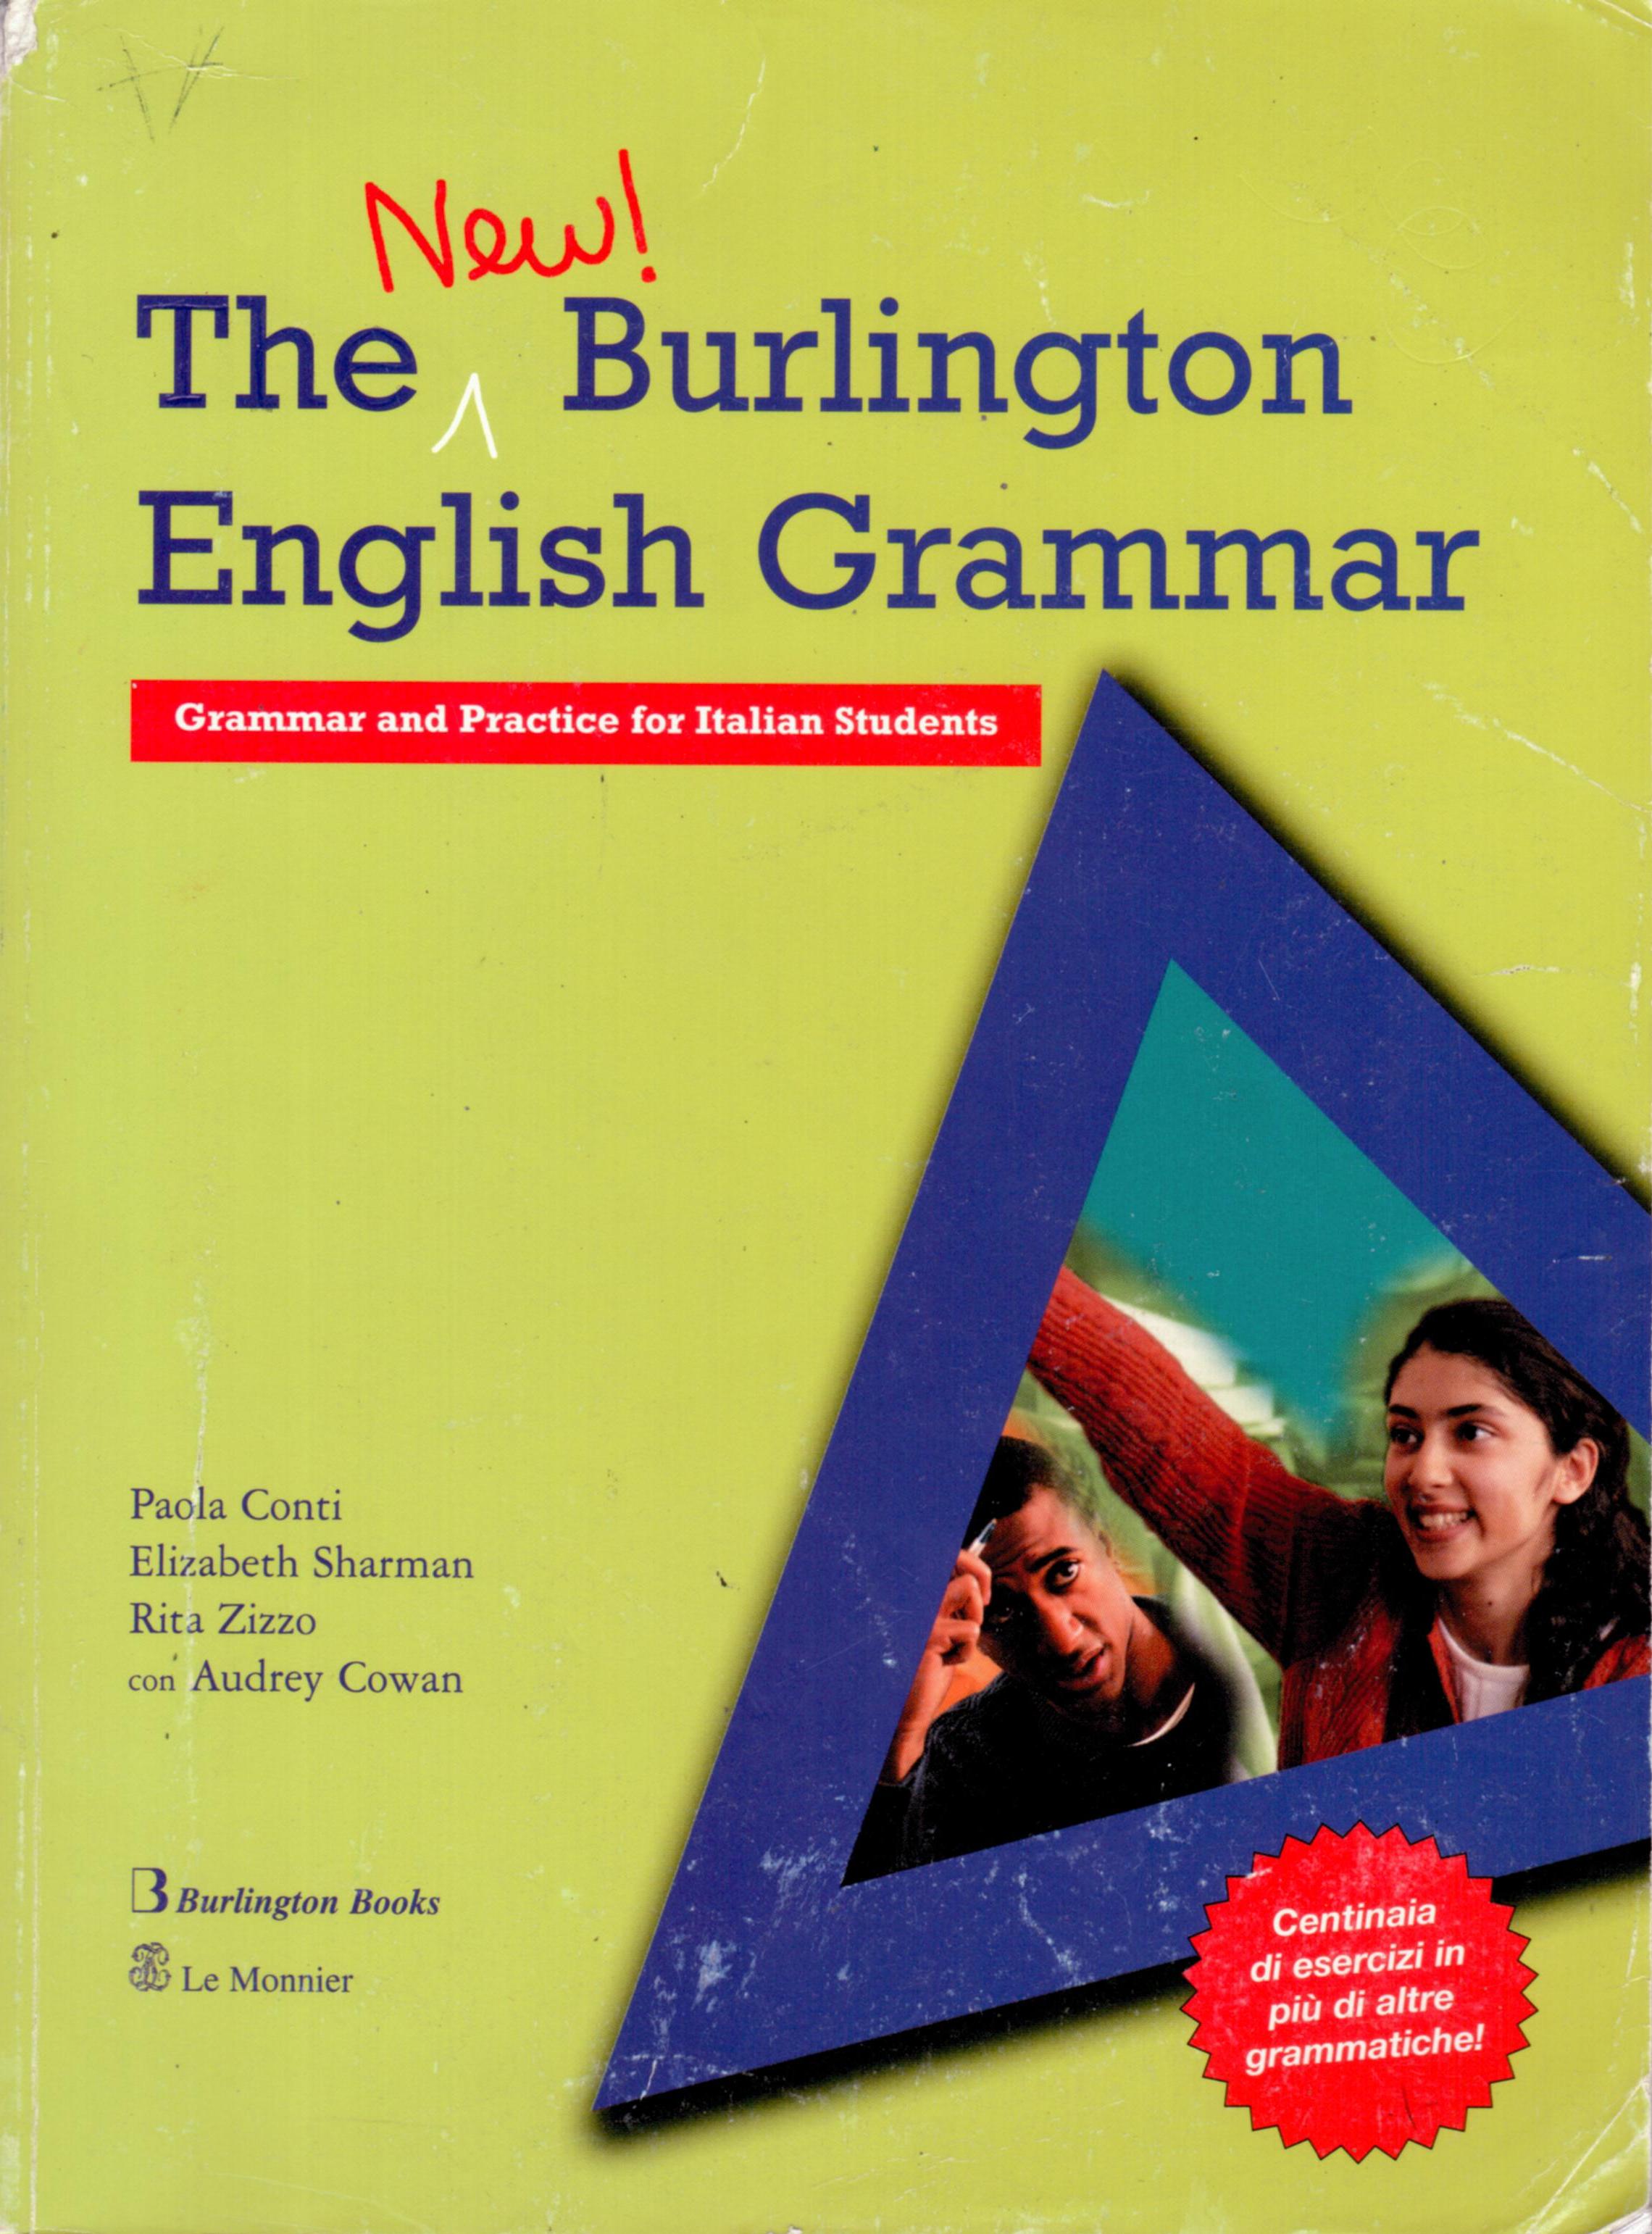 burlington books reported speech